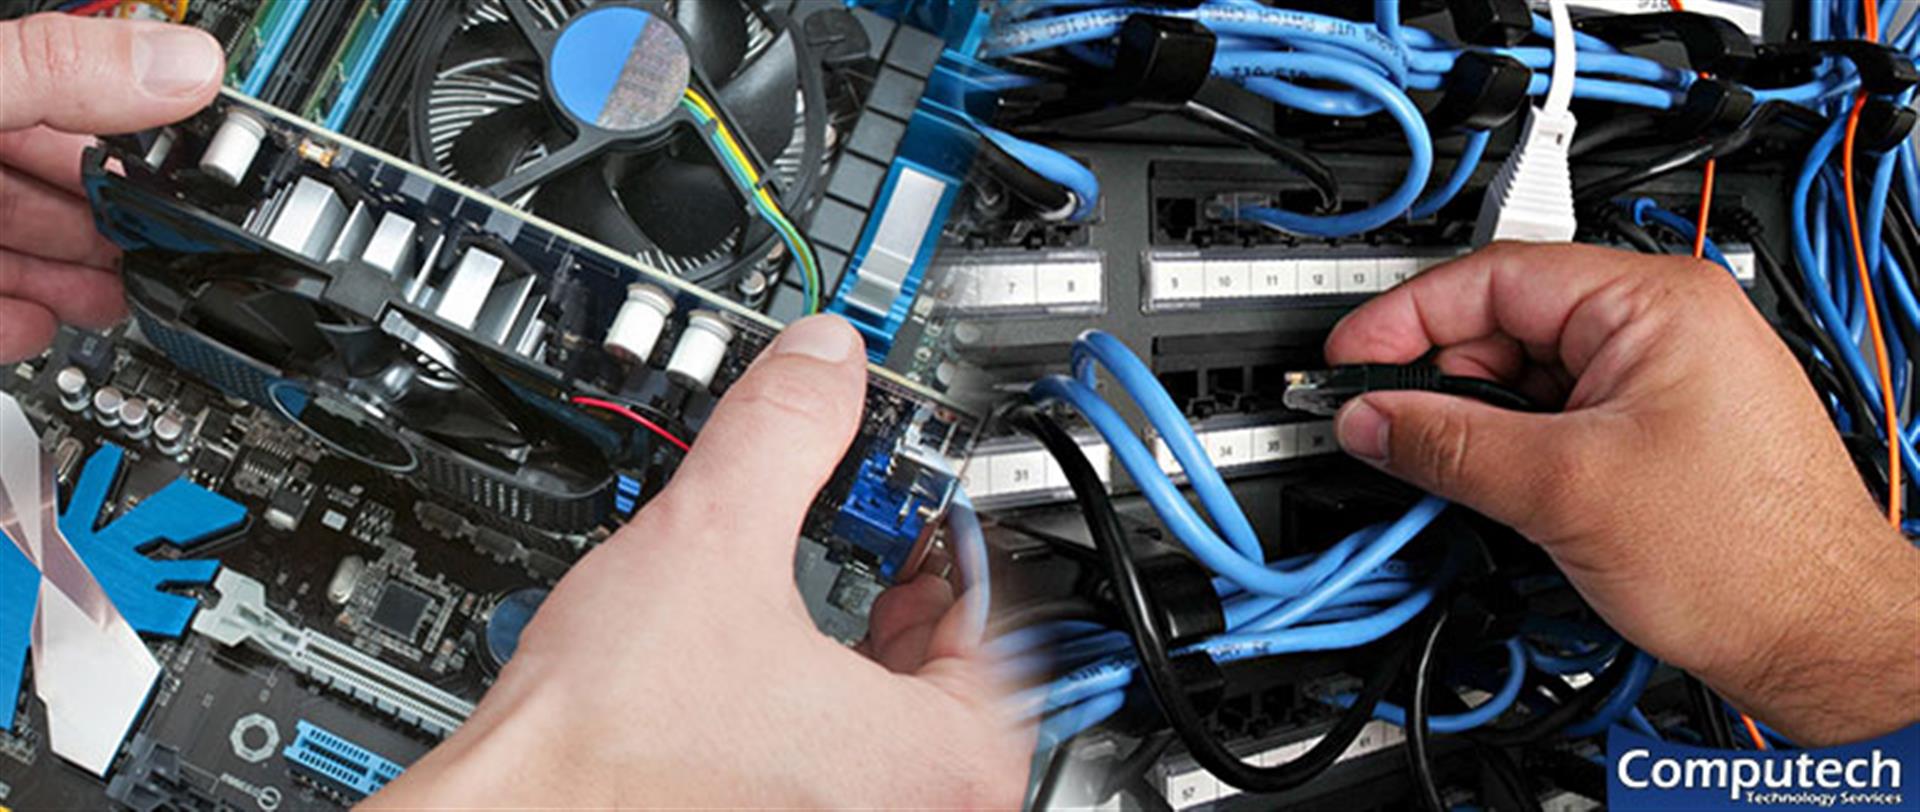 Euharlee Georgia Onsite PC & Printer Repair, Network, Voice & Data Cabling Contractors